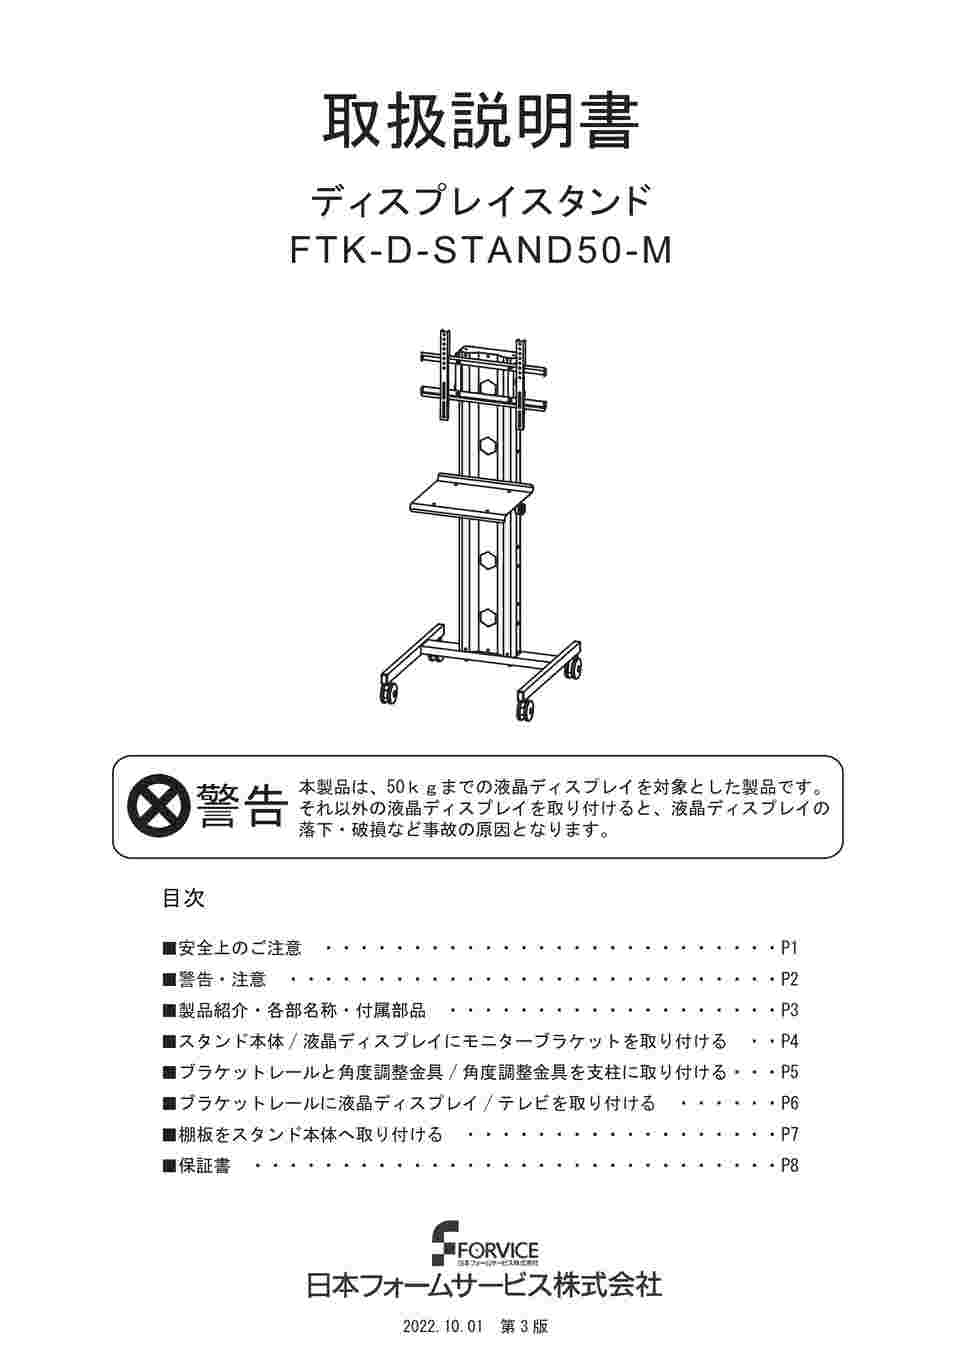 64-6400-35 ディスプレイスタンド FTK-D-STAND50-M 【AXEL】 アズワン